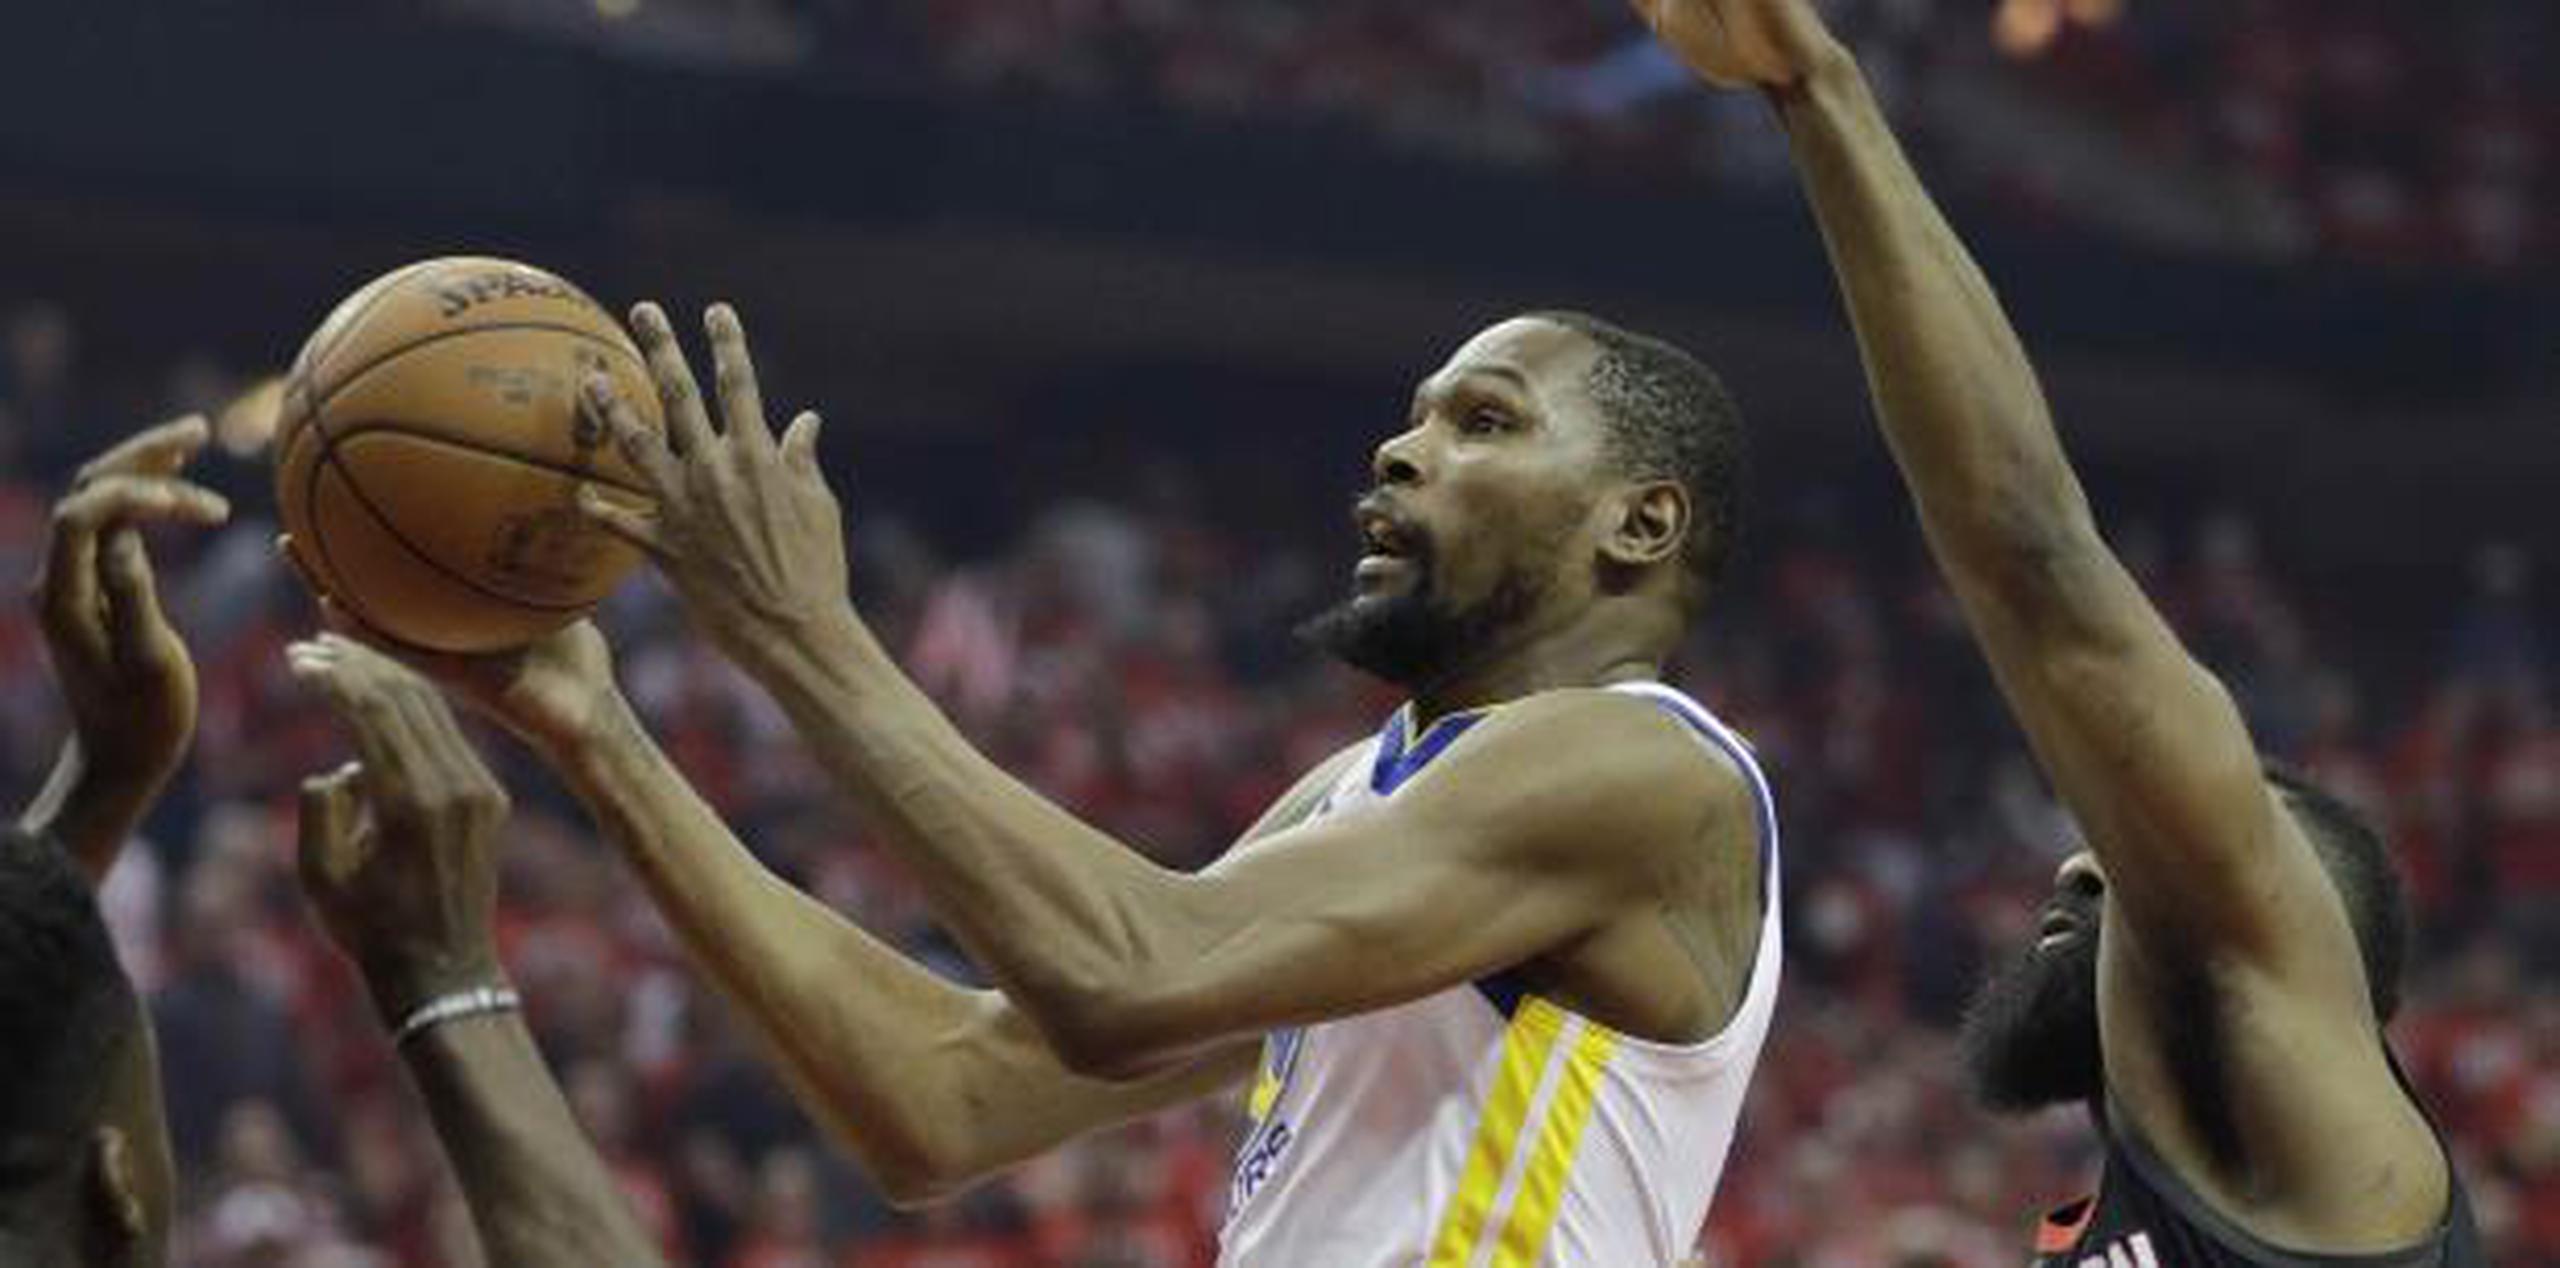 El alero de los Warriors de Golden State, Kevin Durant, ataca el aro y deja atrás a James Harden, de los Rockets de Houston. (AP Foto/David J. Phillip)